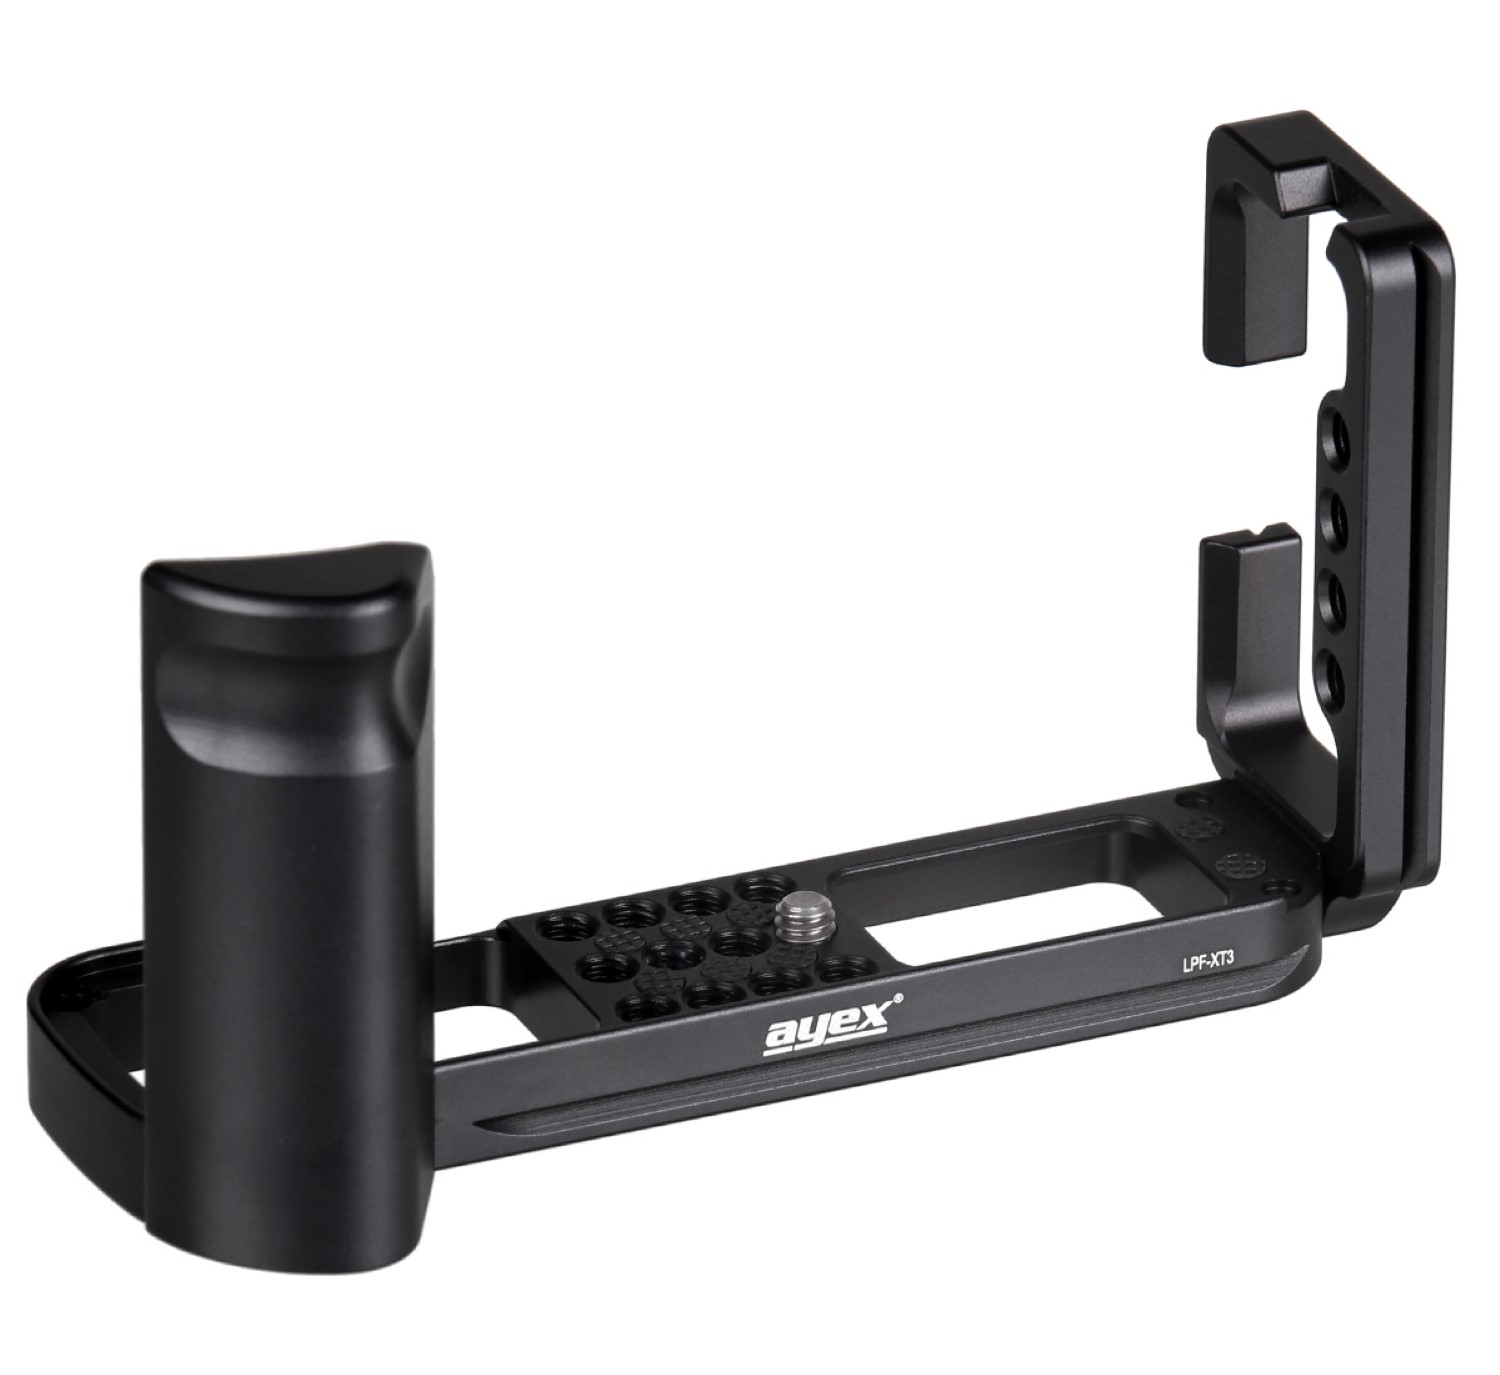 Kamerahalterung Schnellwechselplatte für Fujifilm X-T3 und Arca-Swiss Standard, ayex LPF-XT3